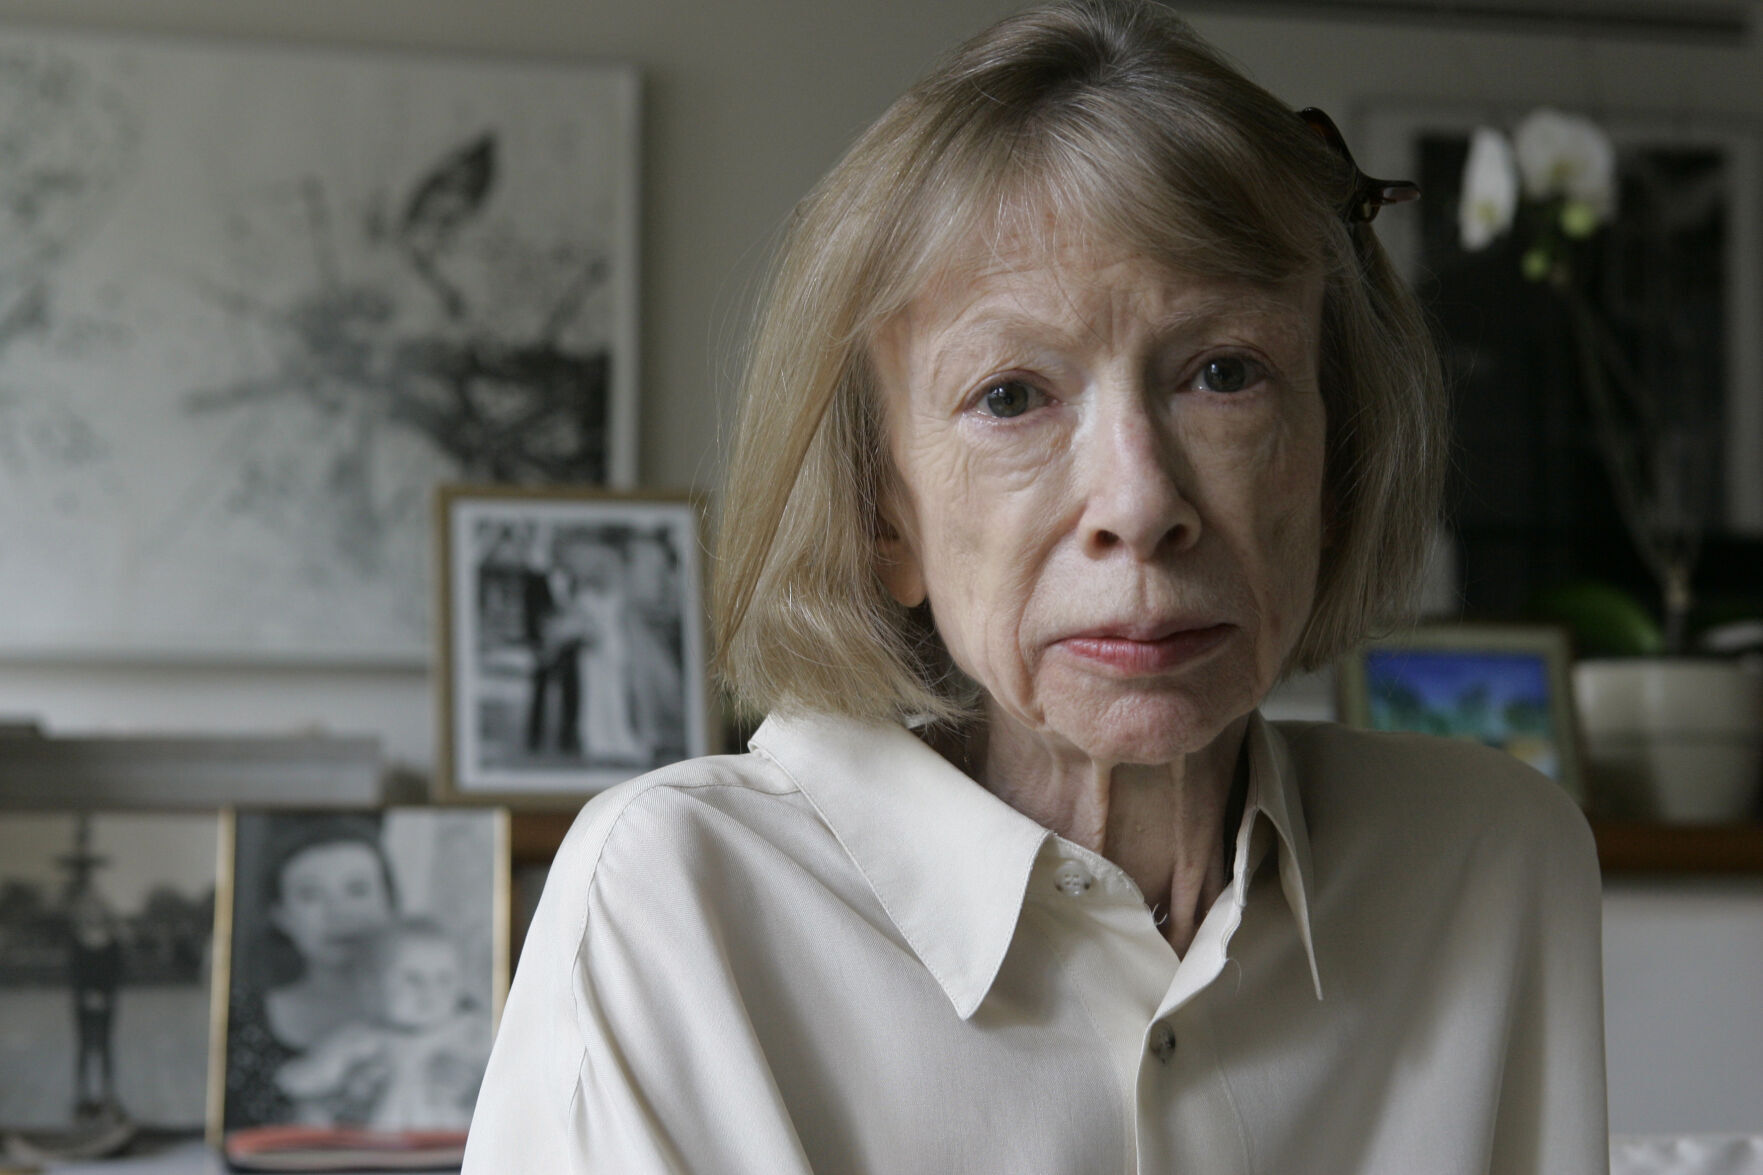 Joan Didion, peerless prose stylist, dies at 87 pic